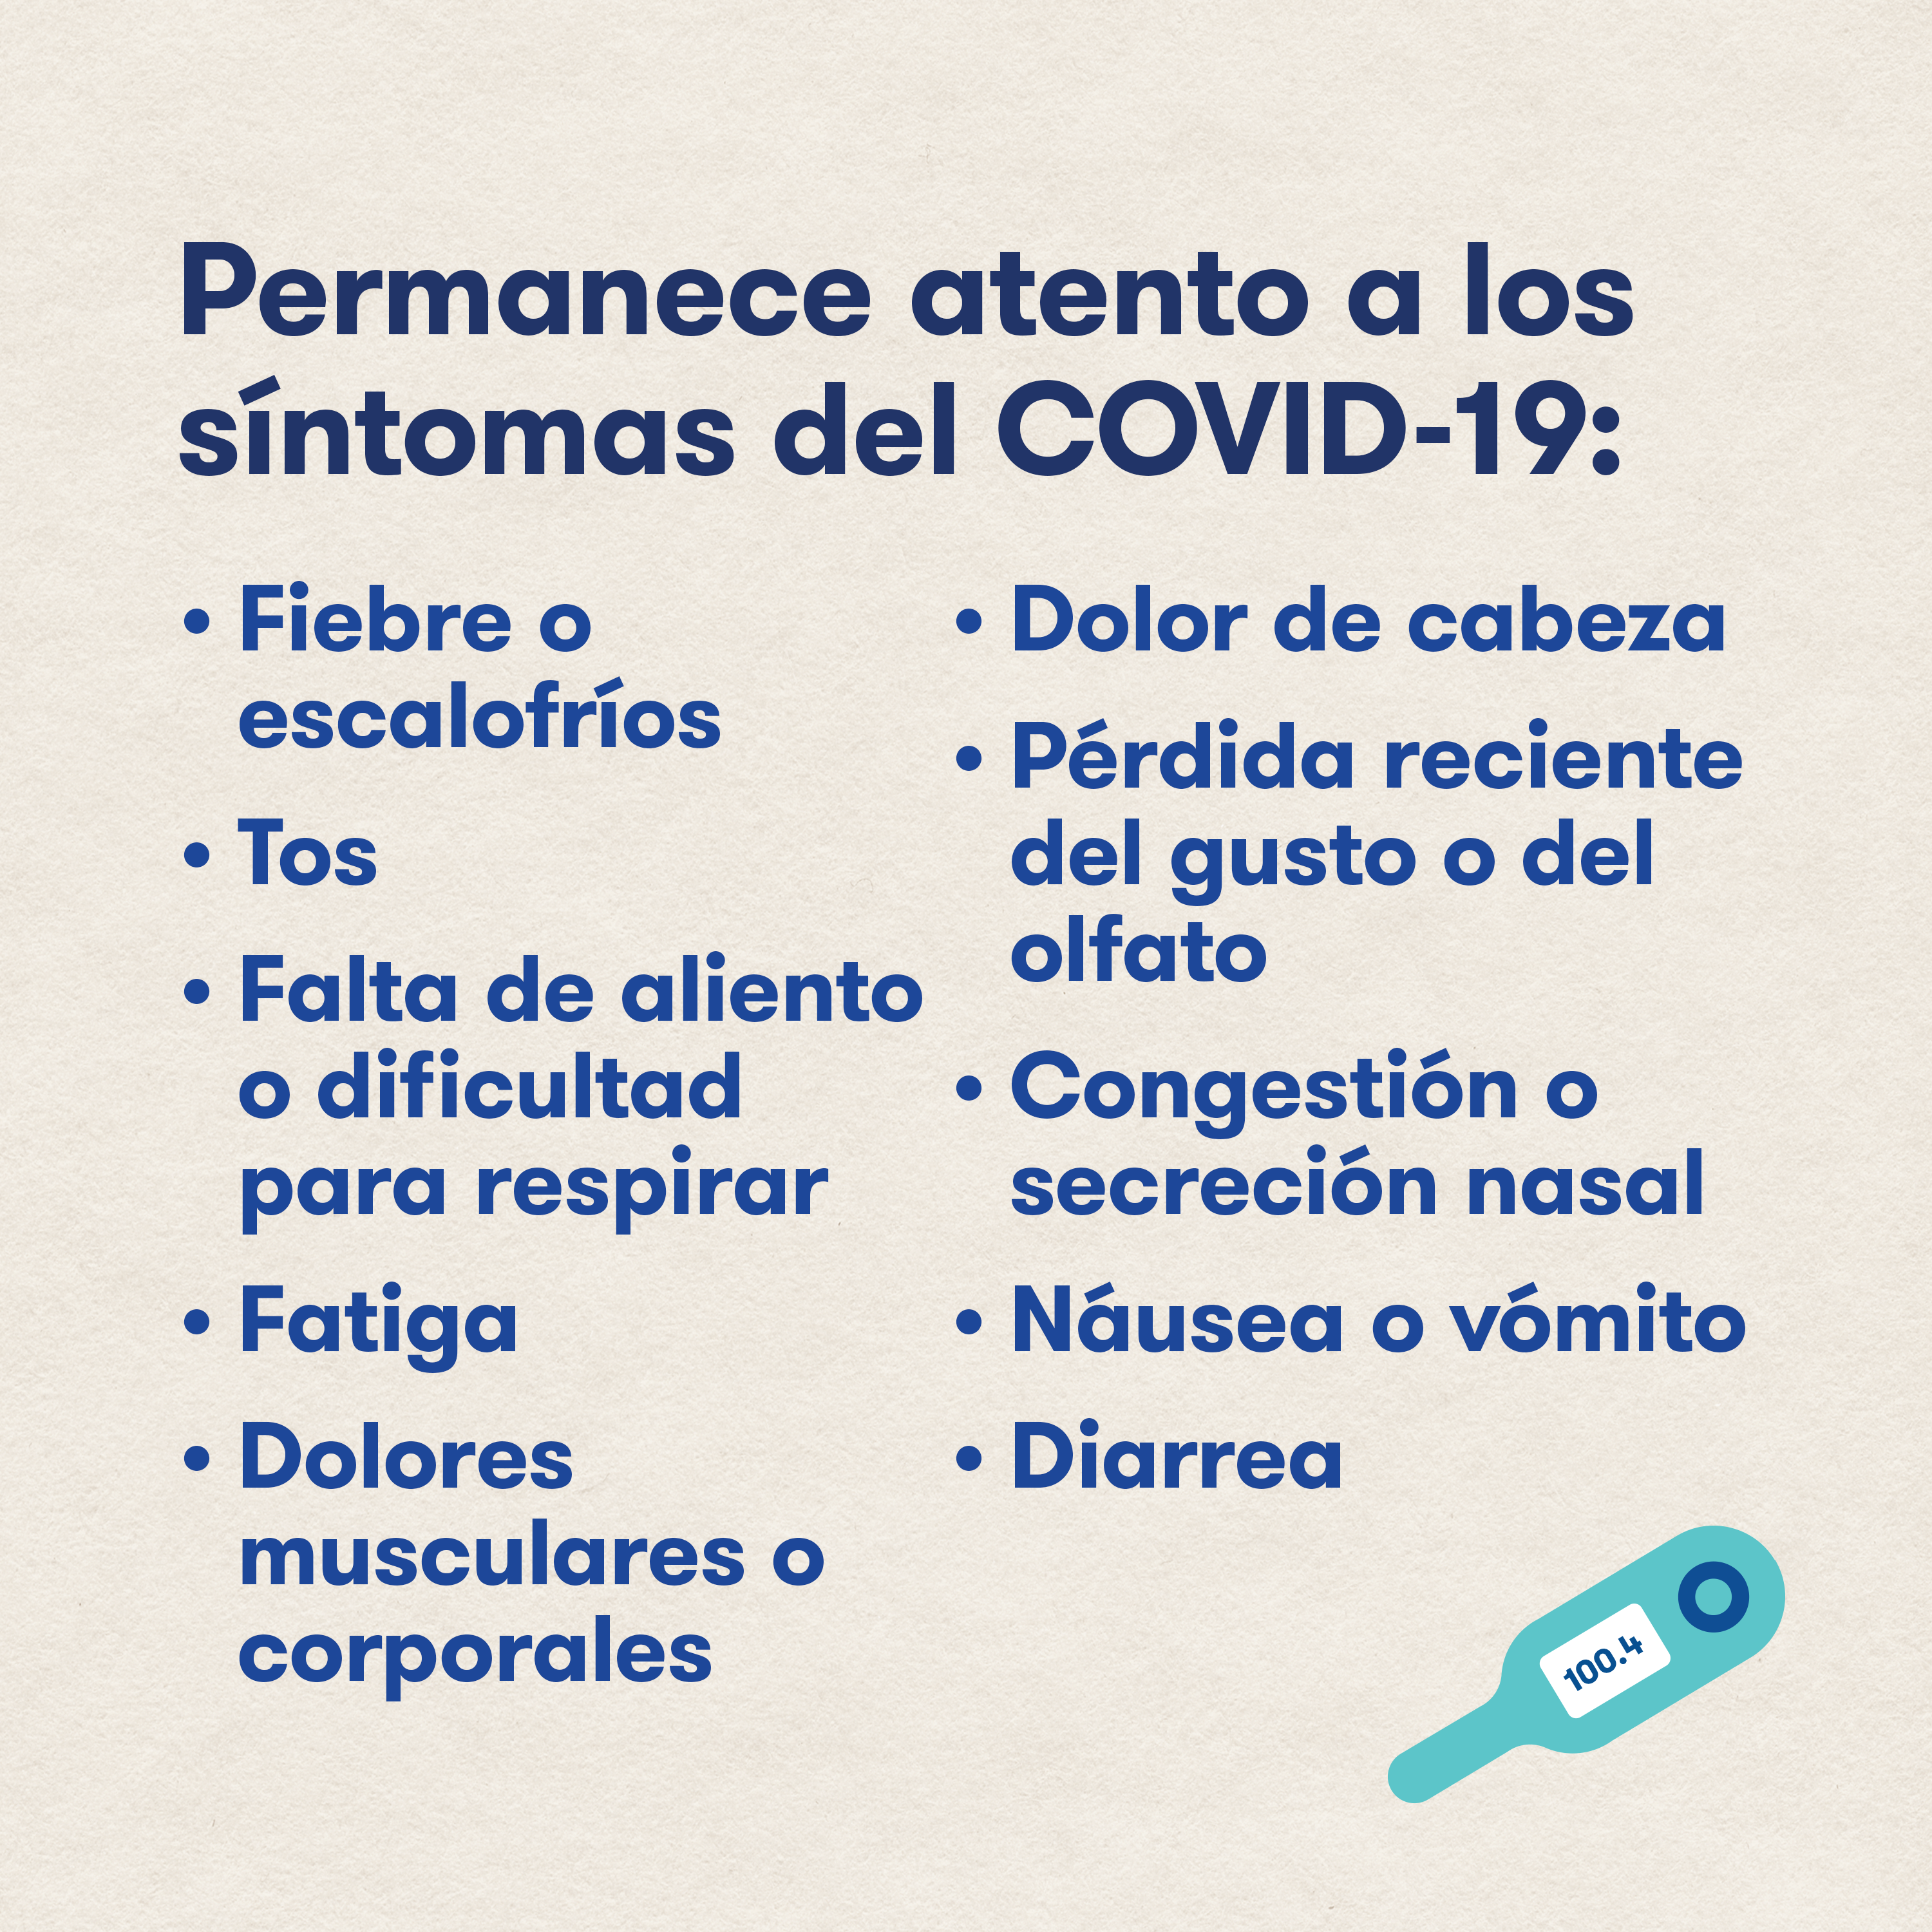 Permanece atento a los síntomas del COVID-19